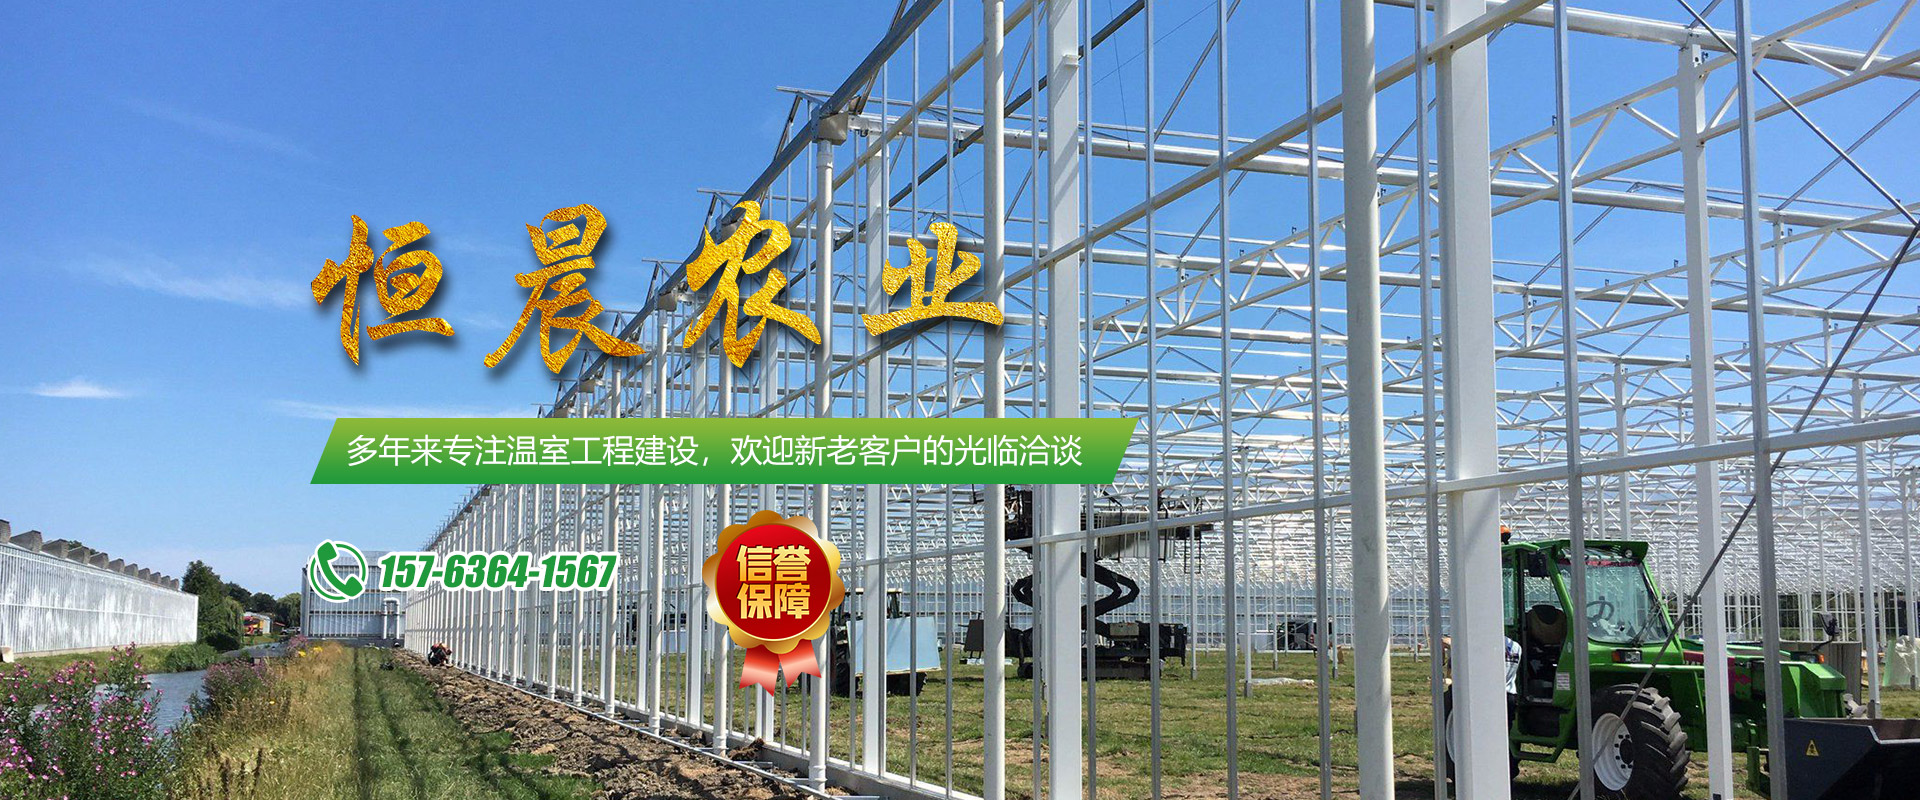 青州市恒晨农业科技有限公司